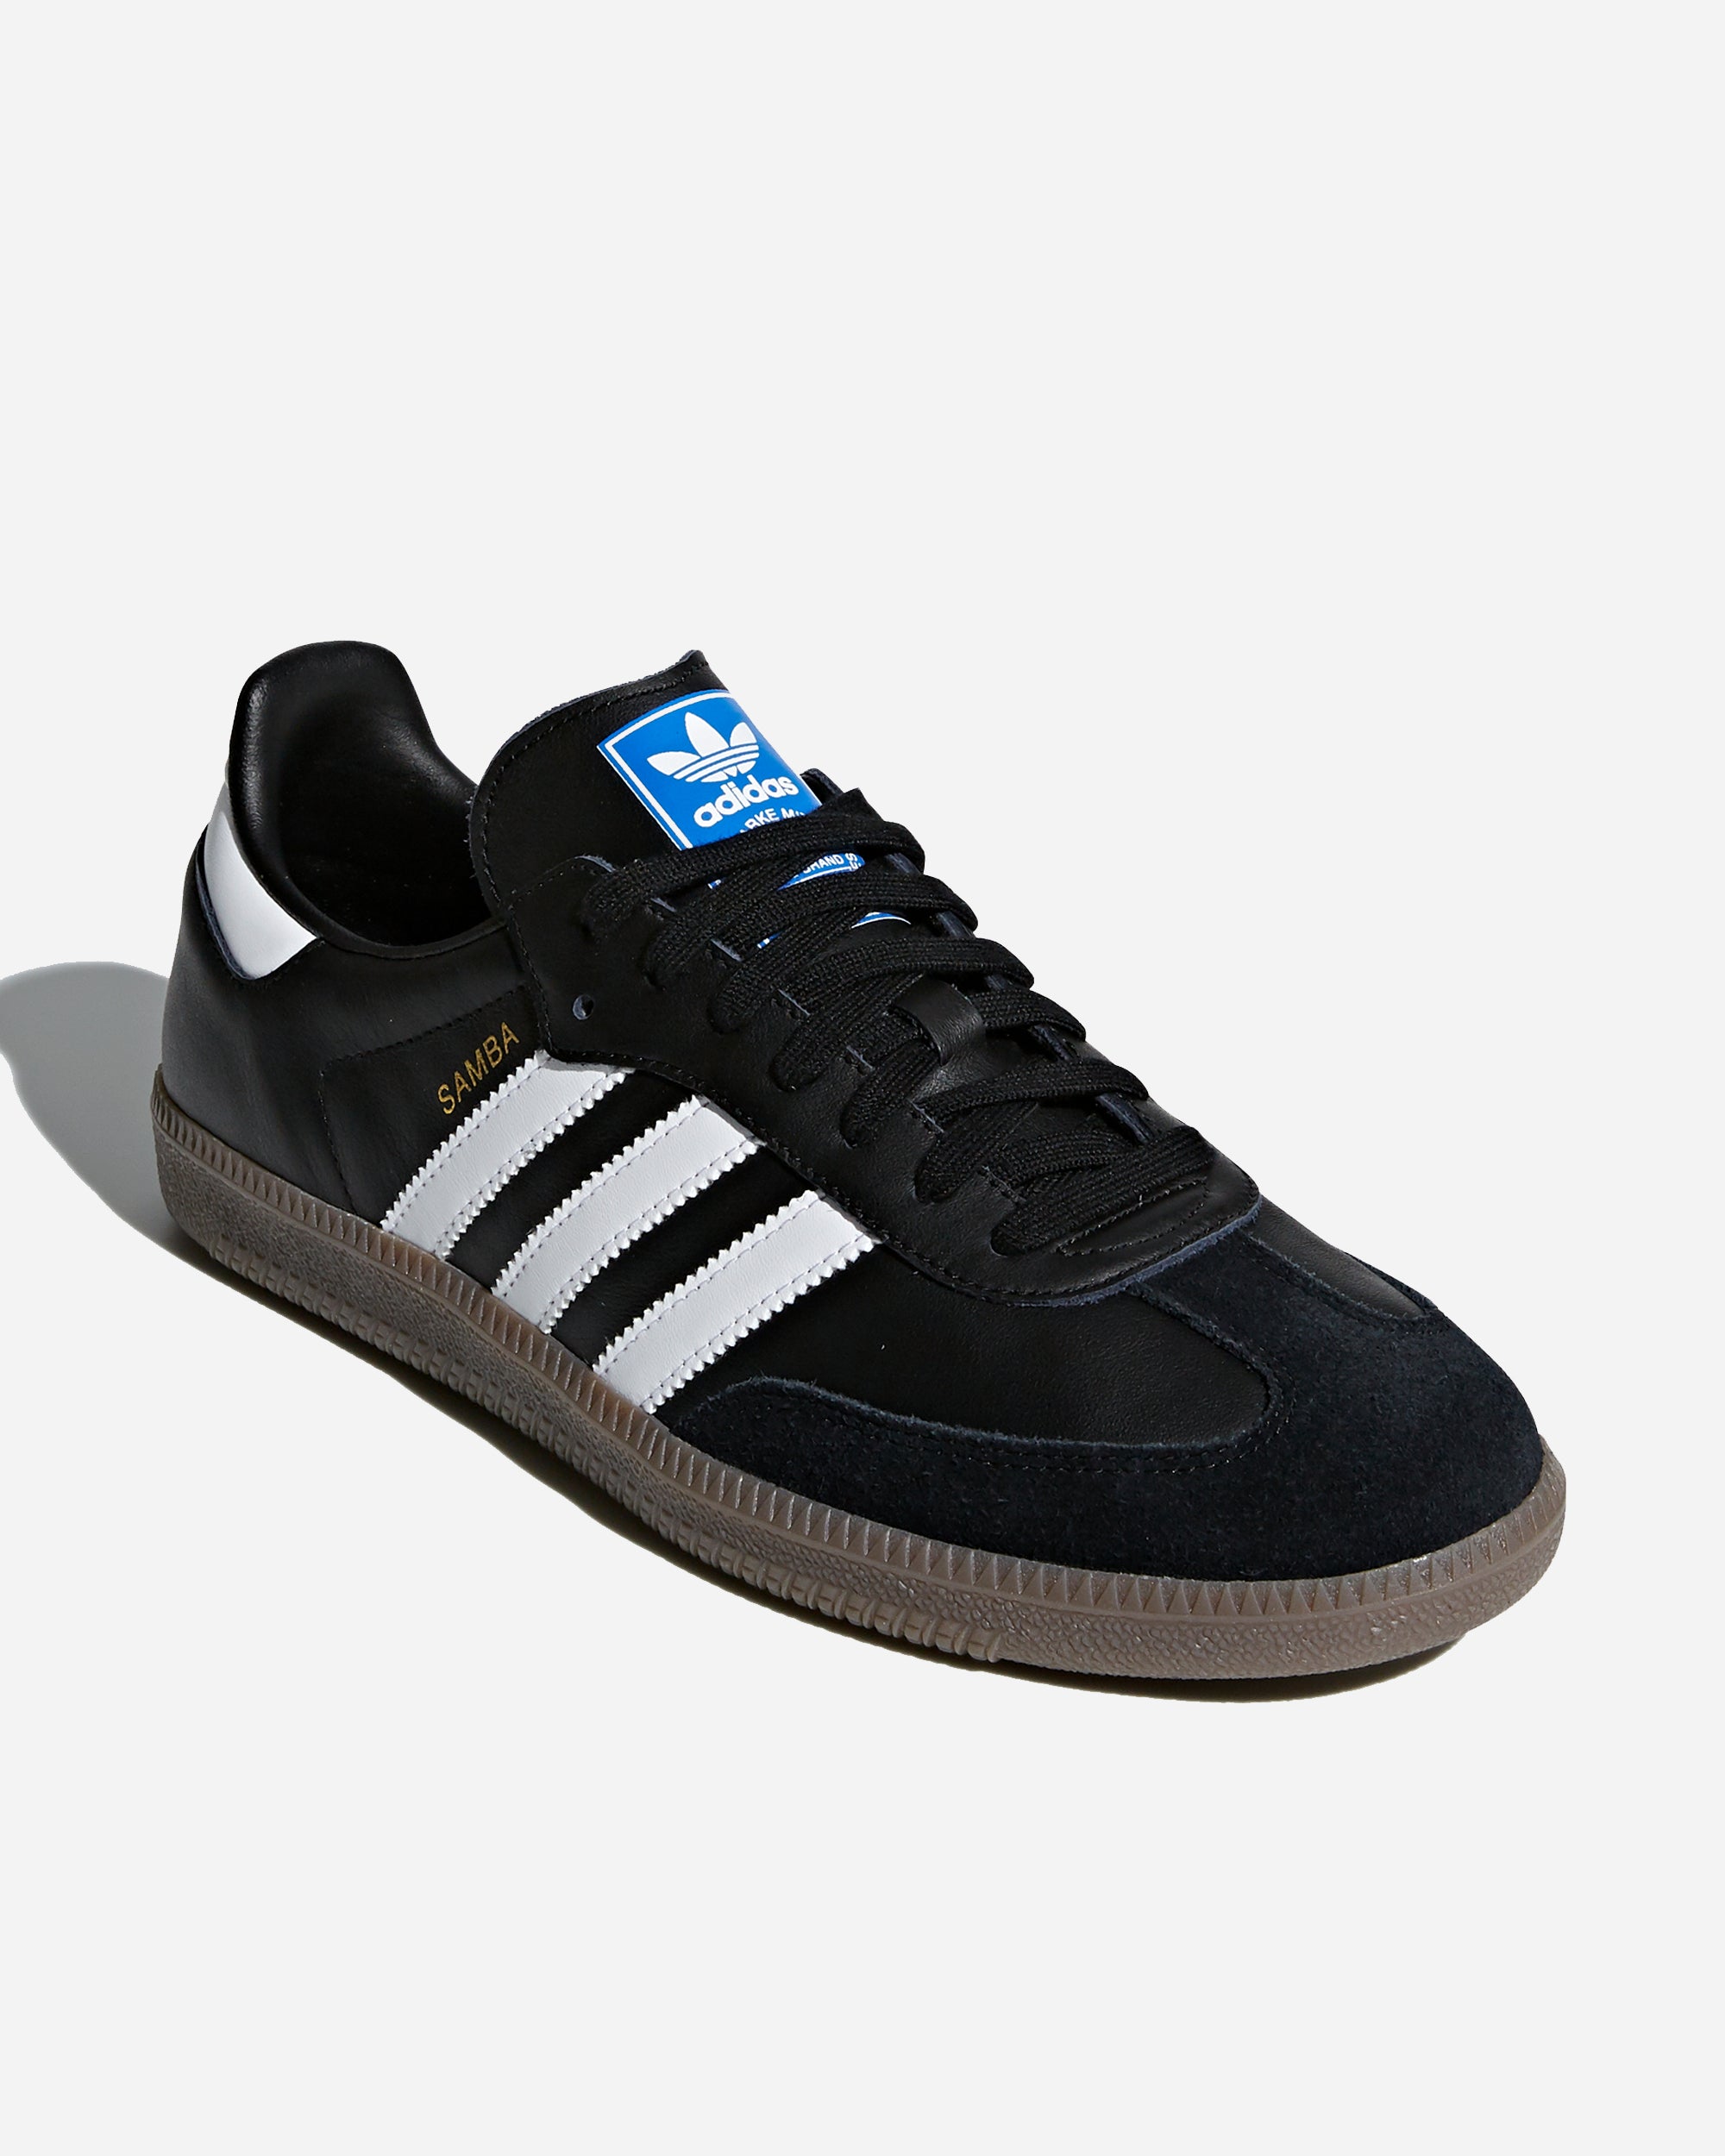 Adidas Ori Samba OG Black B75807